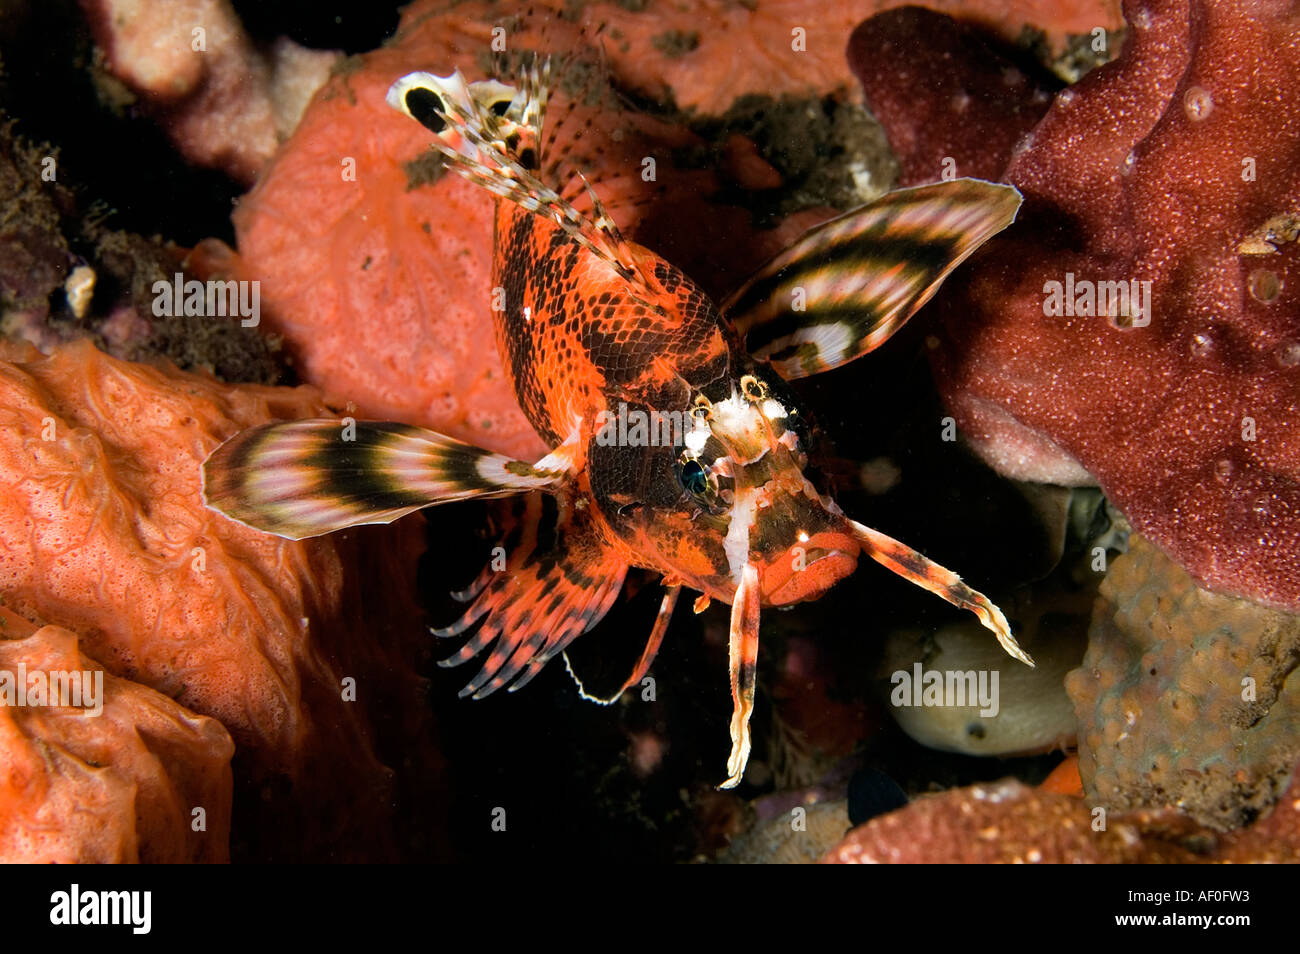 Gefleckte Rotfeuerfische, Dendrochirus Biocellatus, in der Nacht, Bali Indonesien. Stockfoto